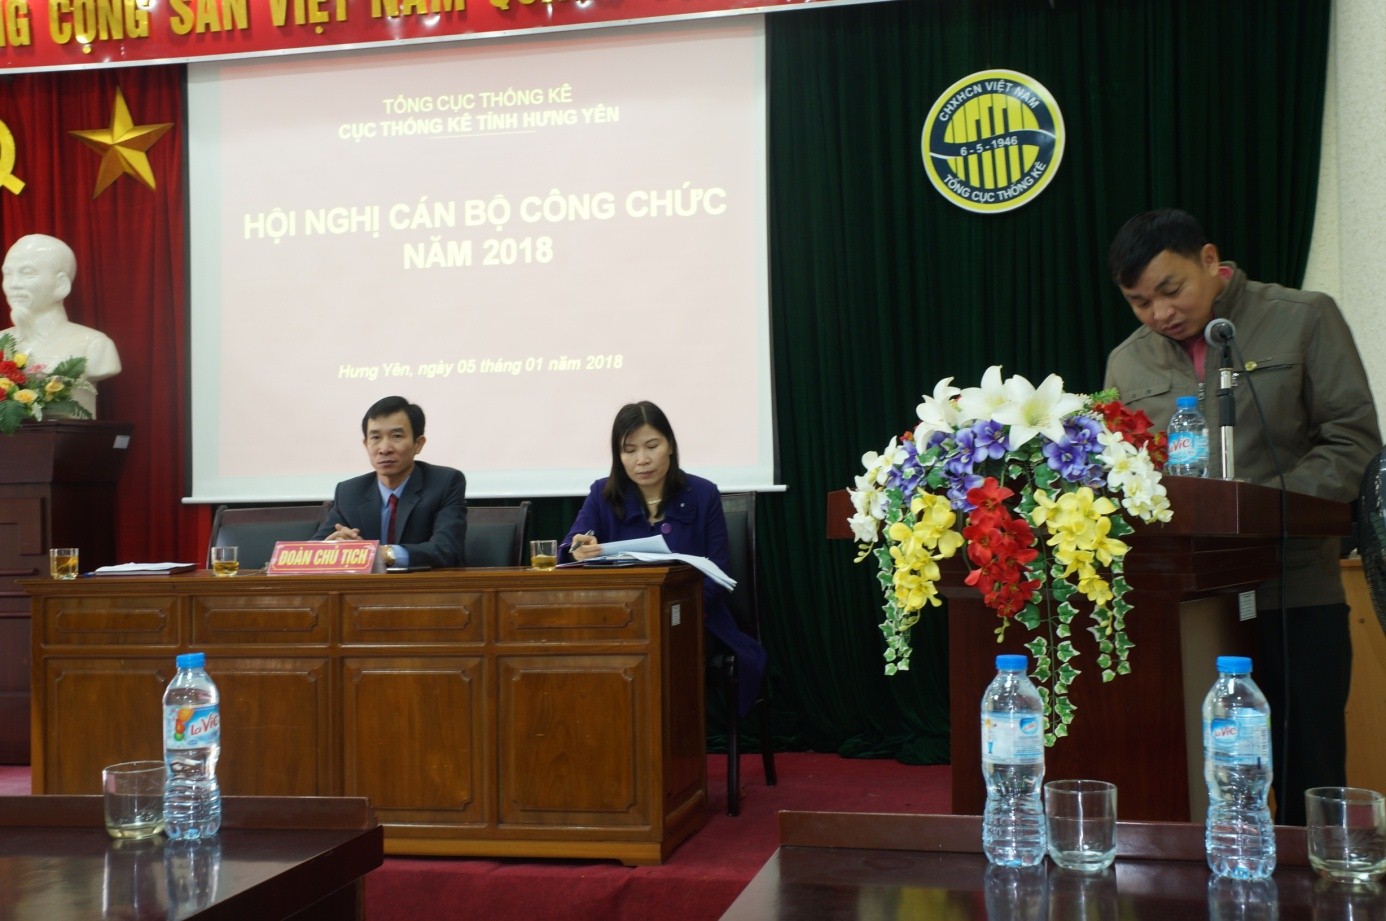 Ông Đỗ Minh Tâm – Phó cục trưởng Cục Thống kê Hưng Yên trình bày báo cáo tổng kết công tác năm 2017 và phương hướng nhiệm vụ năm 2018